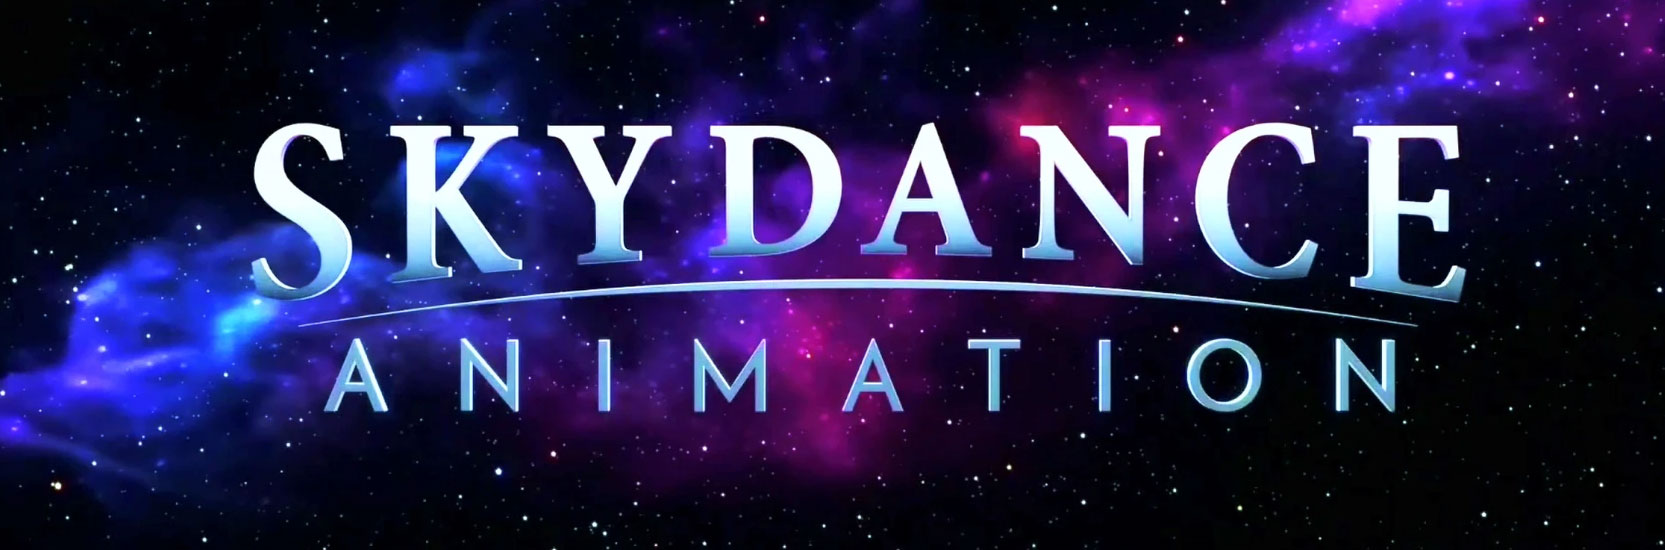 Les prochains films Skydance Animation seront sur Netflix